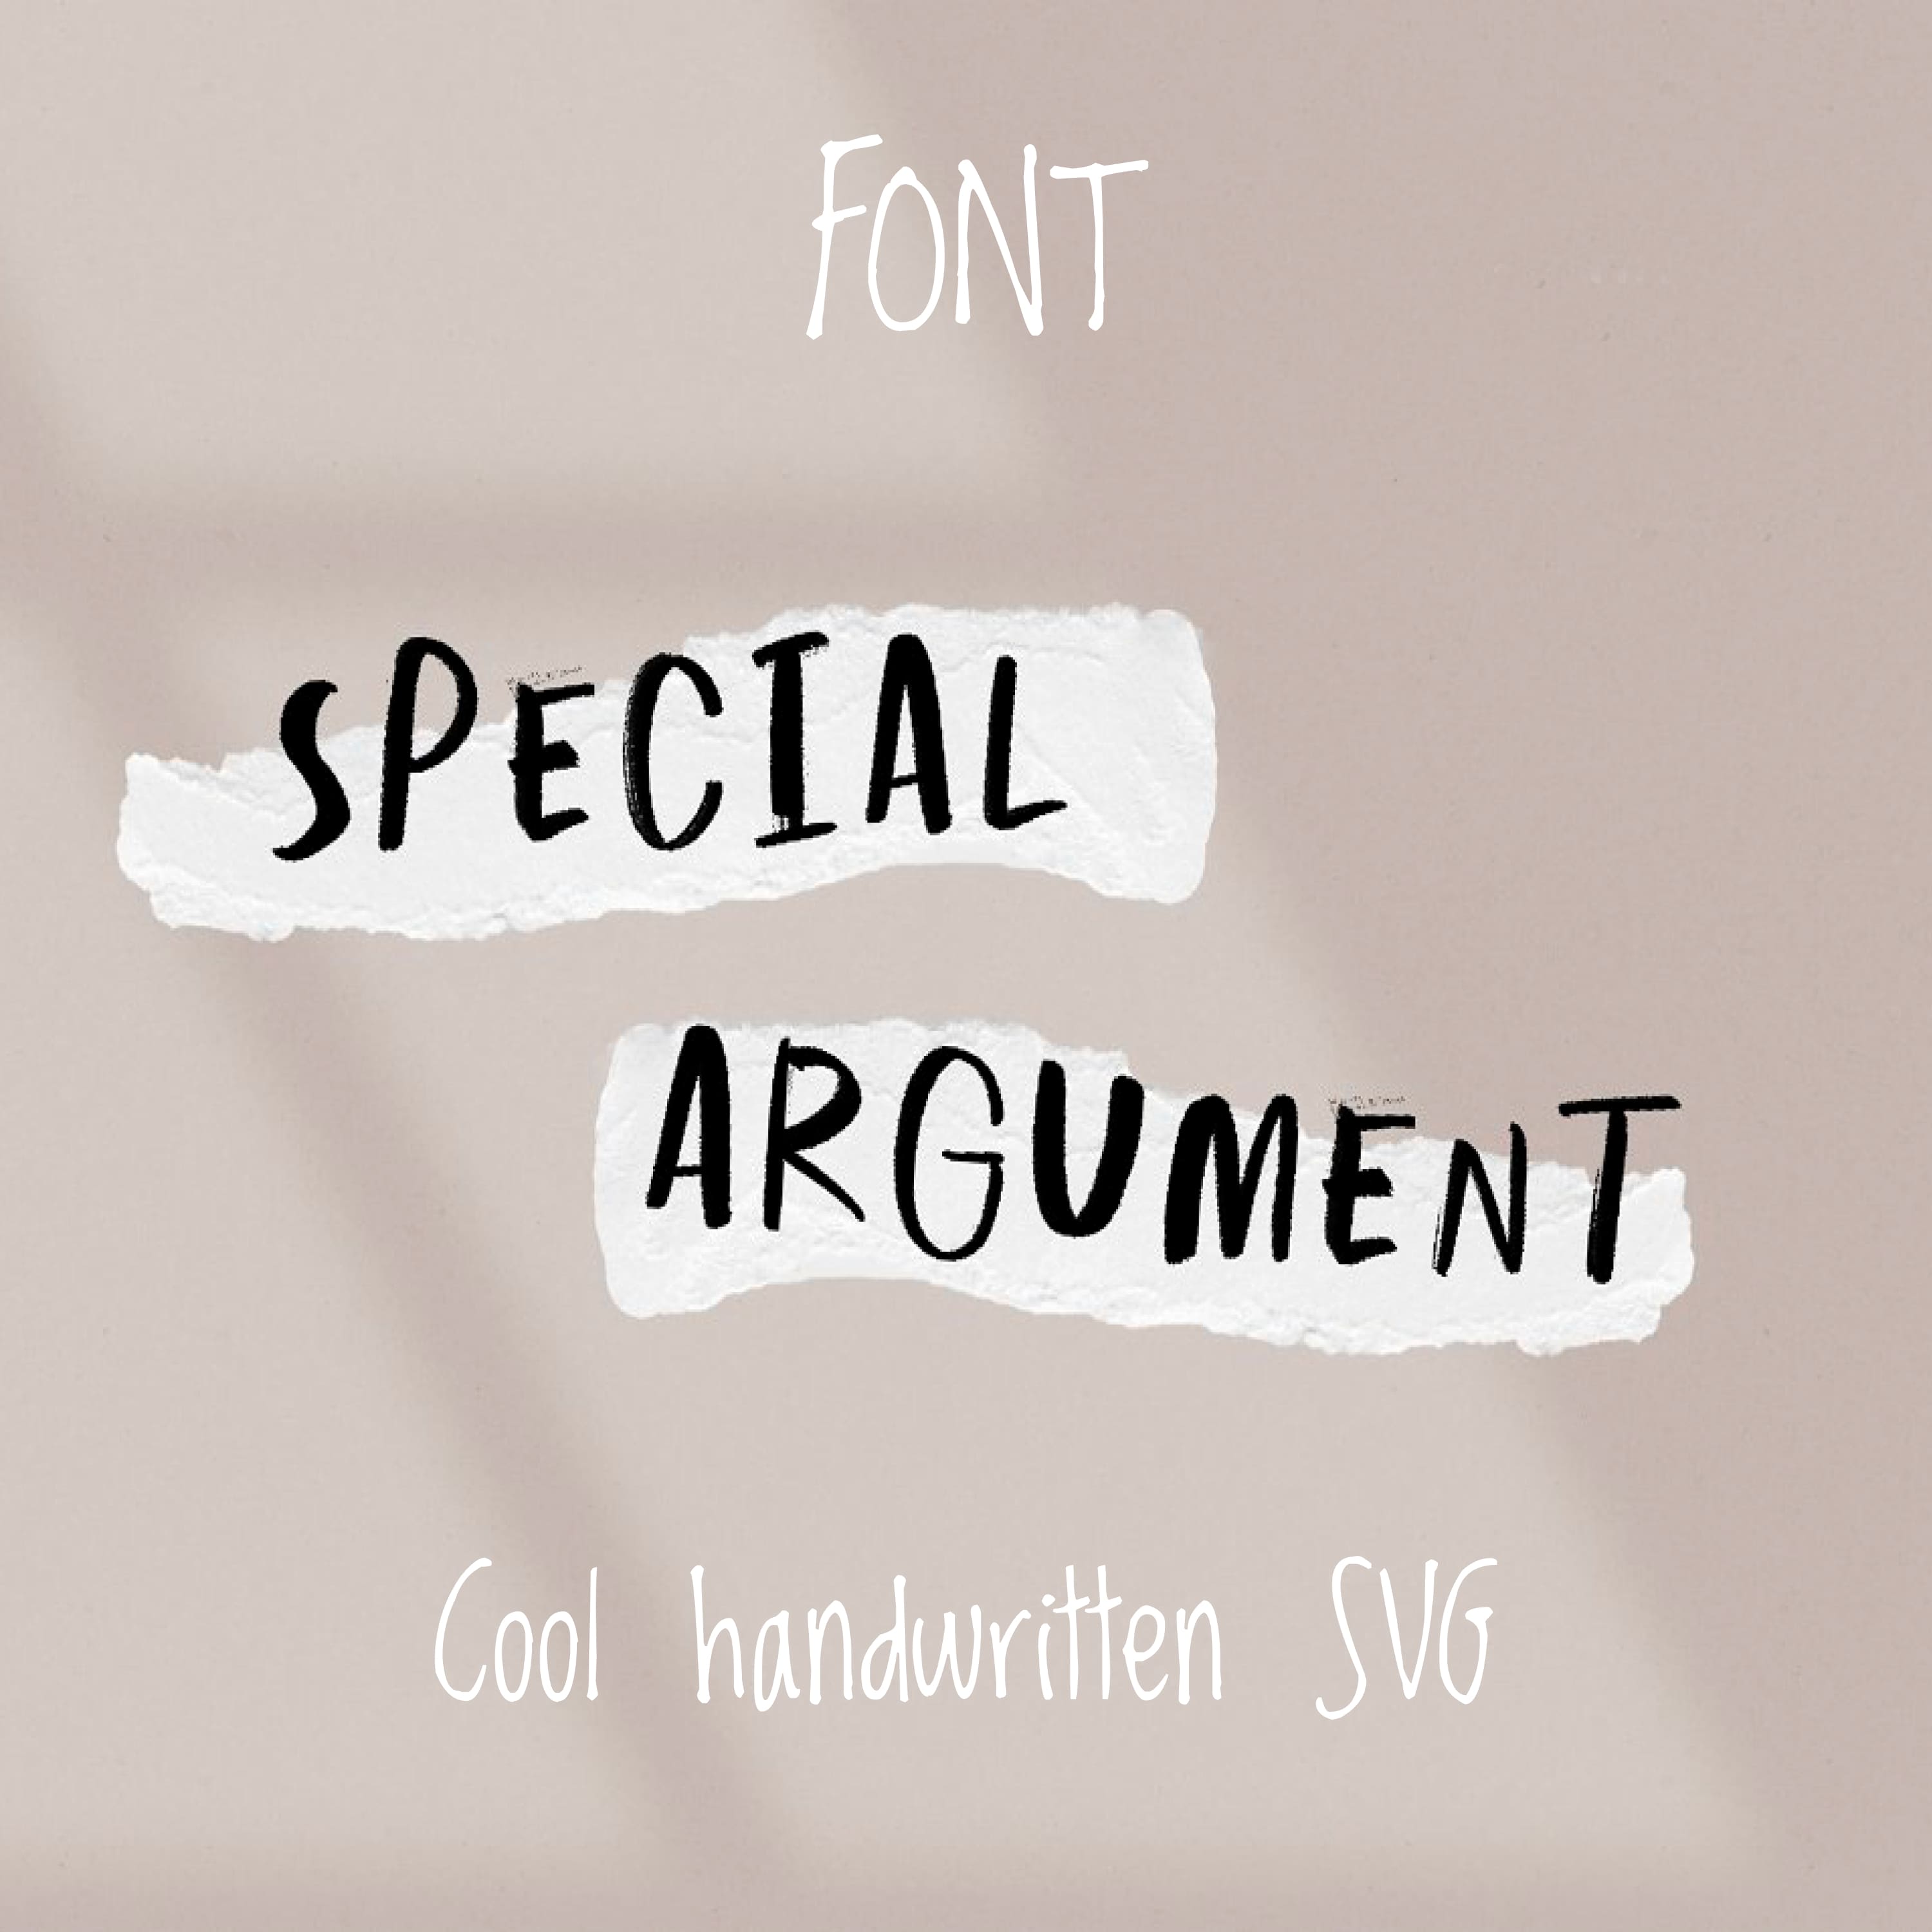 Special Argument SVG Handwritten 1500x1500 1.